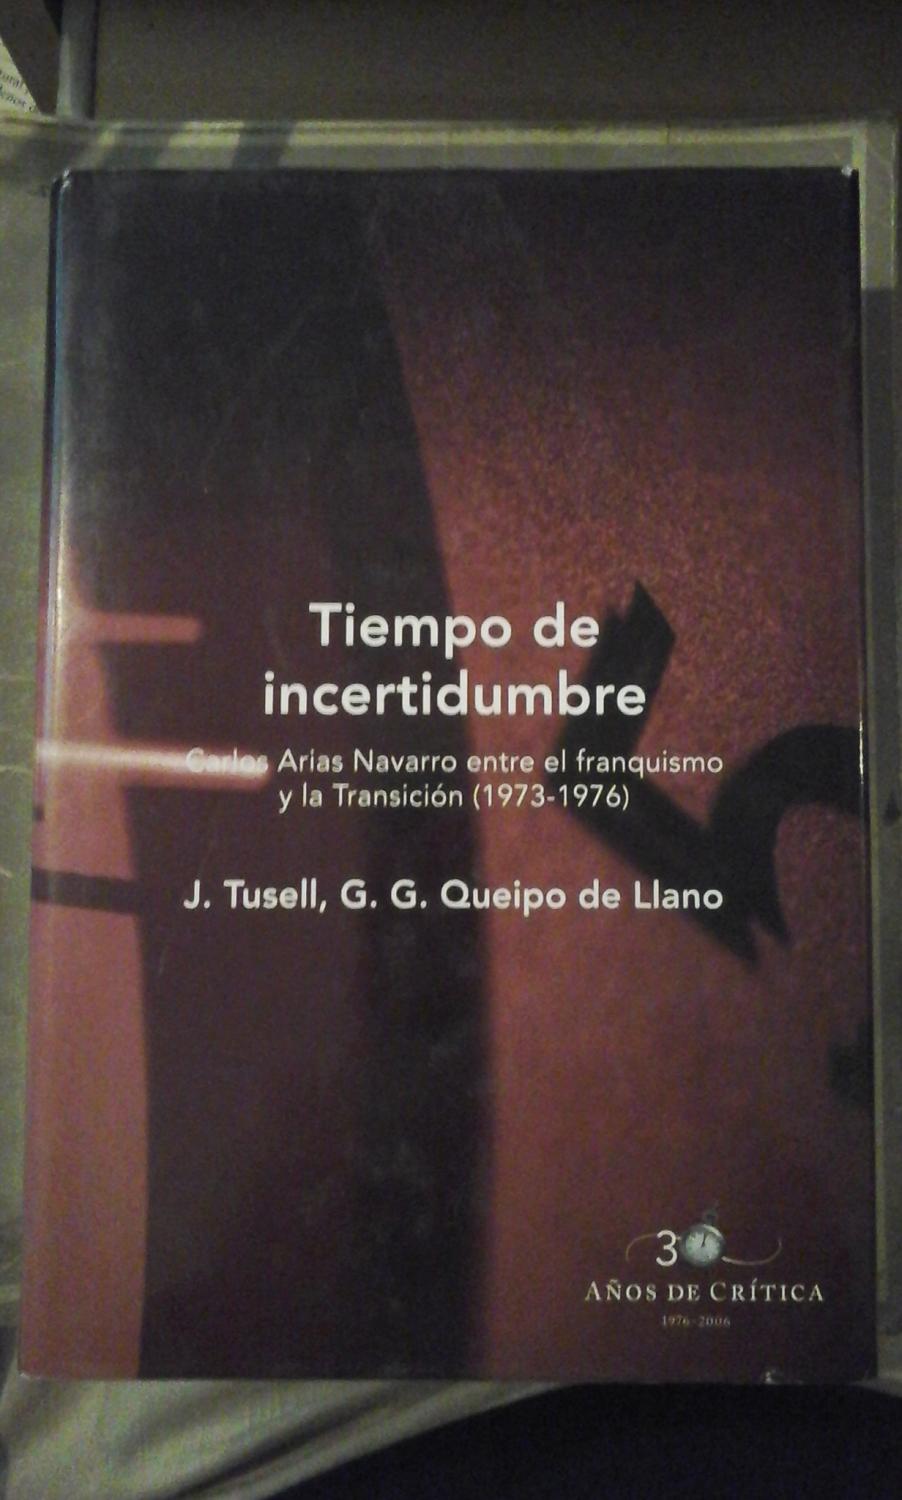 TIEMPO DE INCERTIDUMBRE. Carlos Arias Navarro entre el franquismo y la Transición (1973-1986) (Barcelona, 2003) - Javier Rusell/ G. G. Queipo de Llano